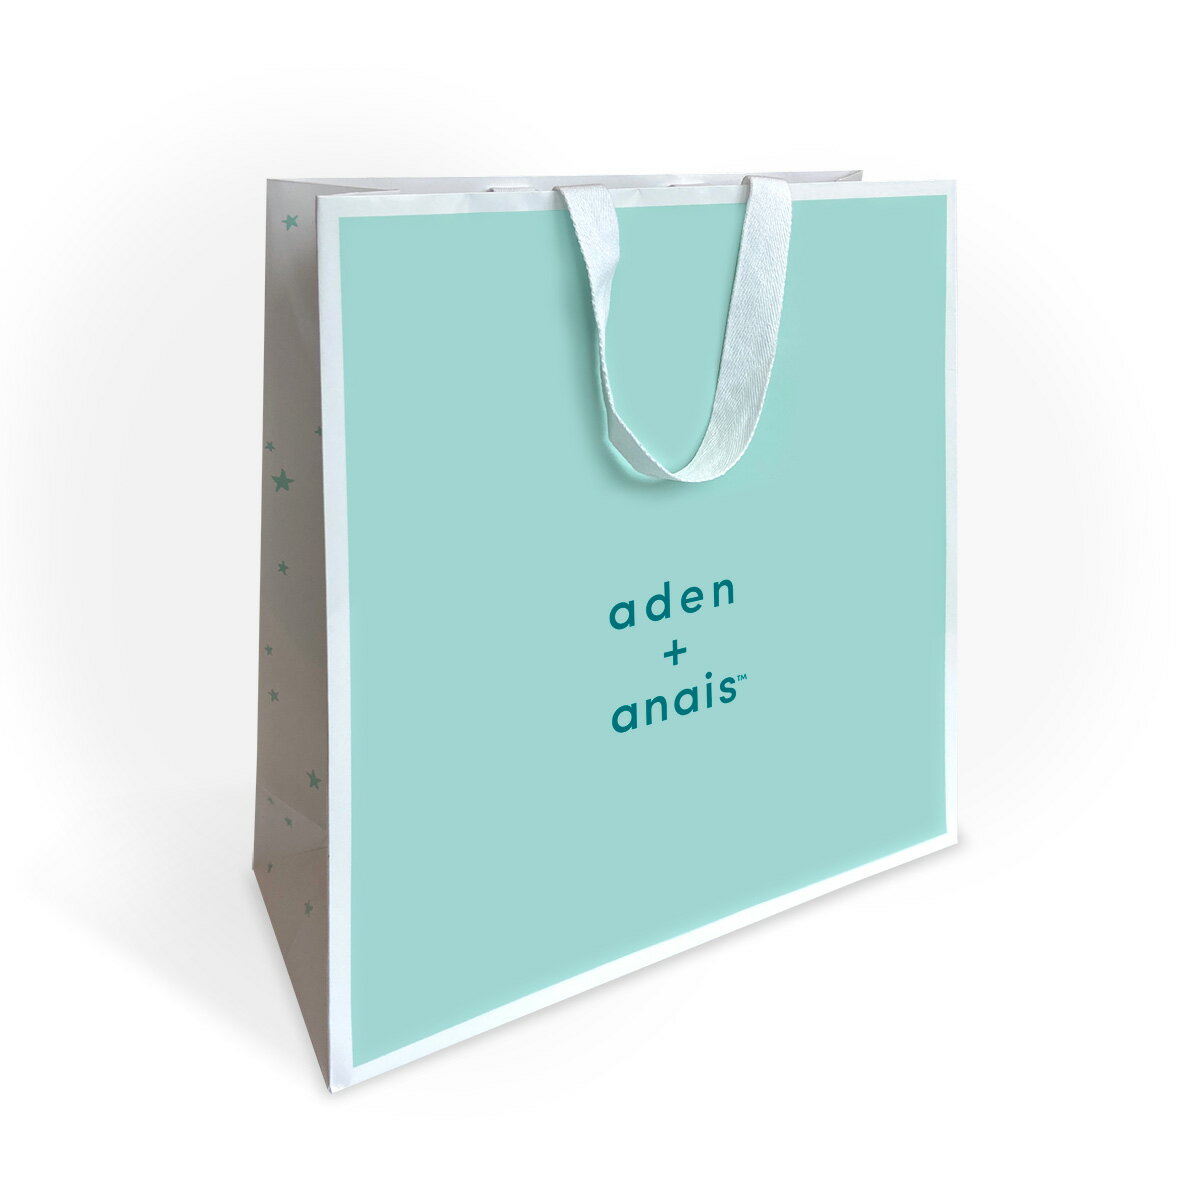 aden+anais （エイデンアンドアネイ） 製品情報 ・shopper1 japan shopper - paper bag サイズ ・約32cm x 35cm x 11cm &nbsp;&nbsp;※製造の都合により若干の誤差が生じる場合がございます。 素材 ・ペーパー(紙素材) カラー ・お使いのお使いのモニターにより、色柄の配置が実際のものと異なる場合がございます。 対象商品 《対象アイテム（大型商品は不可）》 ・スワドル 2本入り ・スワドル 4本入り ・ドリームブランケット ・他、ビブ、ウォッシュクロスなど 《同梱可能アイテム》 ミニブランケット 又はスリーピングバッグ又はウォッシュクロス ご注意 ・ショッパー（お渡し袋）のみのご購入はお受けできかねます。 ・ラッピングはご注文画面にお進みいただきラッピングオプション（250円）をご購入ください。 ・必ず商品と一緒にご購入ください。 お届けについてaden + anais shopper - paper bag [お渡し用紙袋 スワドル／ブランケット用] エイデンアンドアネイのロゴ入りお渡し用紙袋 表面にブランドロゴ、側面には星が散りばめられたデザインのお渡し用専用ブランド紙袋です。 大切なプレゼントをお渡しの際にご利用ください。 紙袋はお渡し用となります。商品の上に乗せた状態でお届けいたします。 《対象アイテム（大型商品は不可）》 ・スワドル 2本入り ・スワドル 4本入り ・ドリームブランケット ・他、ビブ、ウォッシュクロスなど 《同梱可能アイテム》 ミニブランケット 又はスリーピングバッグ又はウォッシュクロス ・ショッパー（お渡し袋）のみのご購入はお受けできかねます。 ・ラッピングはご注文画面にお進みいただきラッピングオプション（250円）をご購入ください。 ・必ず商品を一緒にご購入ください。 サイズ：約32cm x 35cm x 110cm